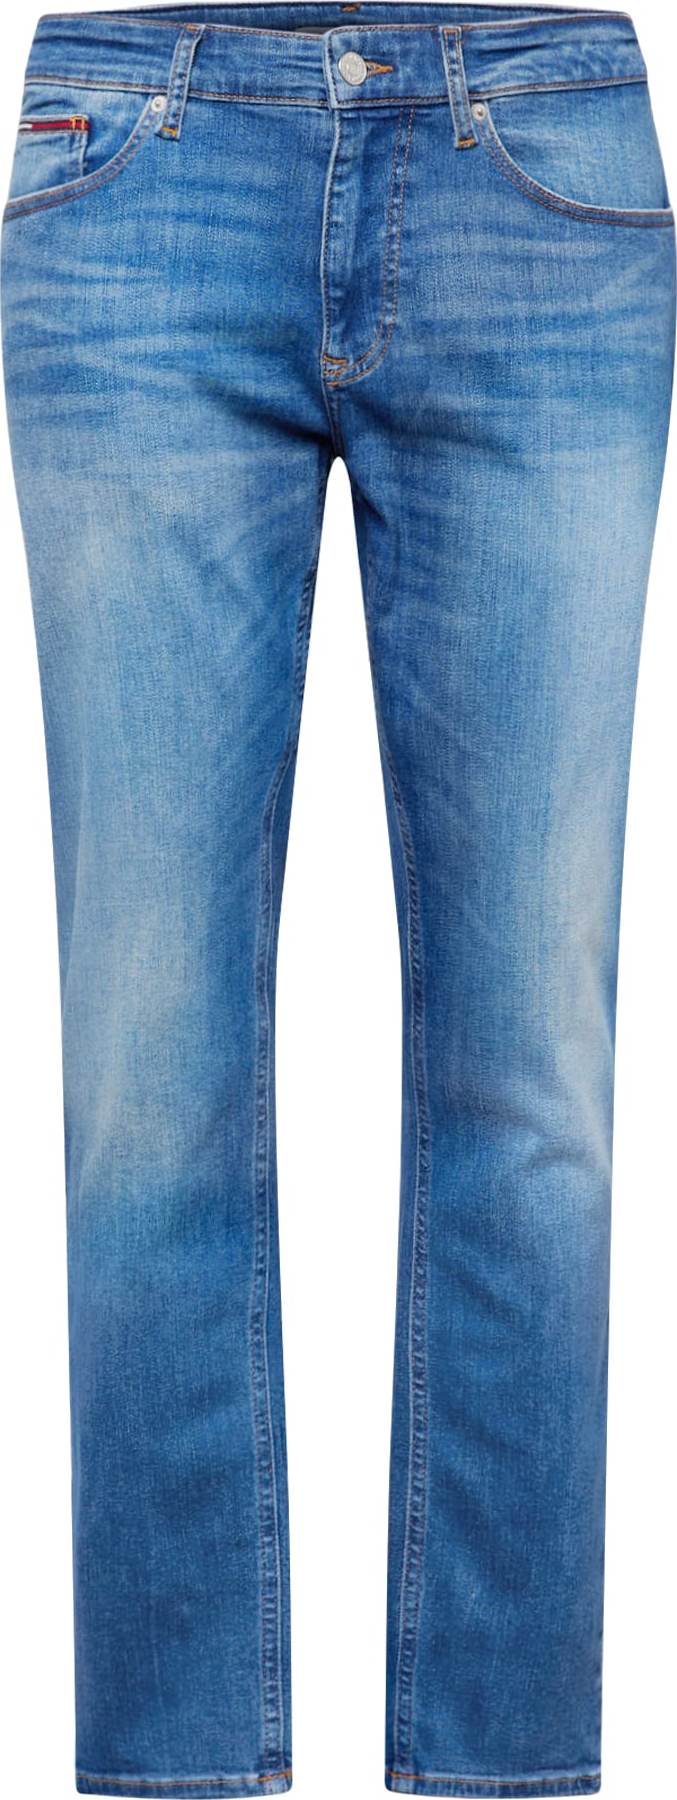 Džíny 'AUSTIN' Tommy Jeans modrá džínovina